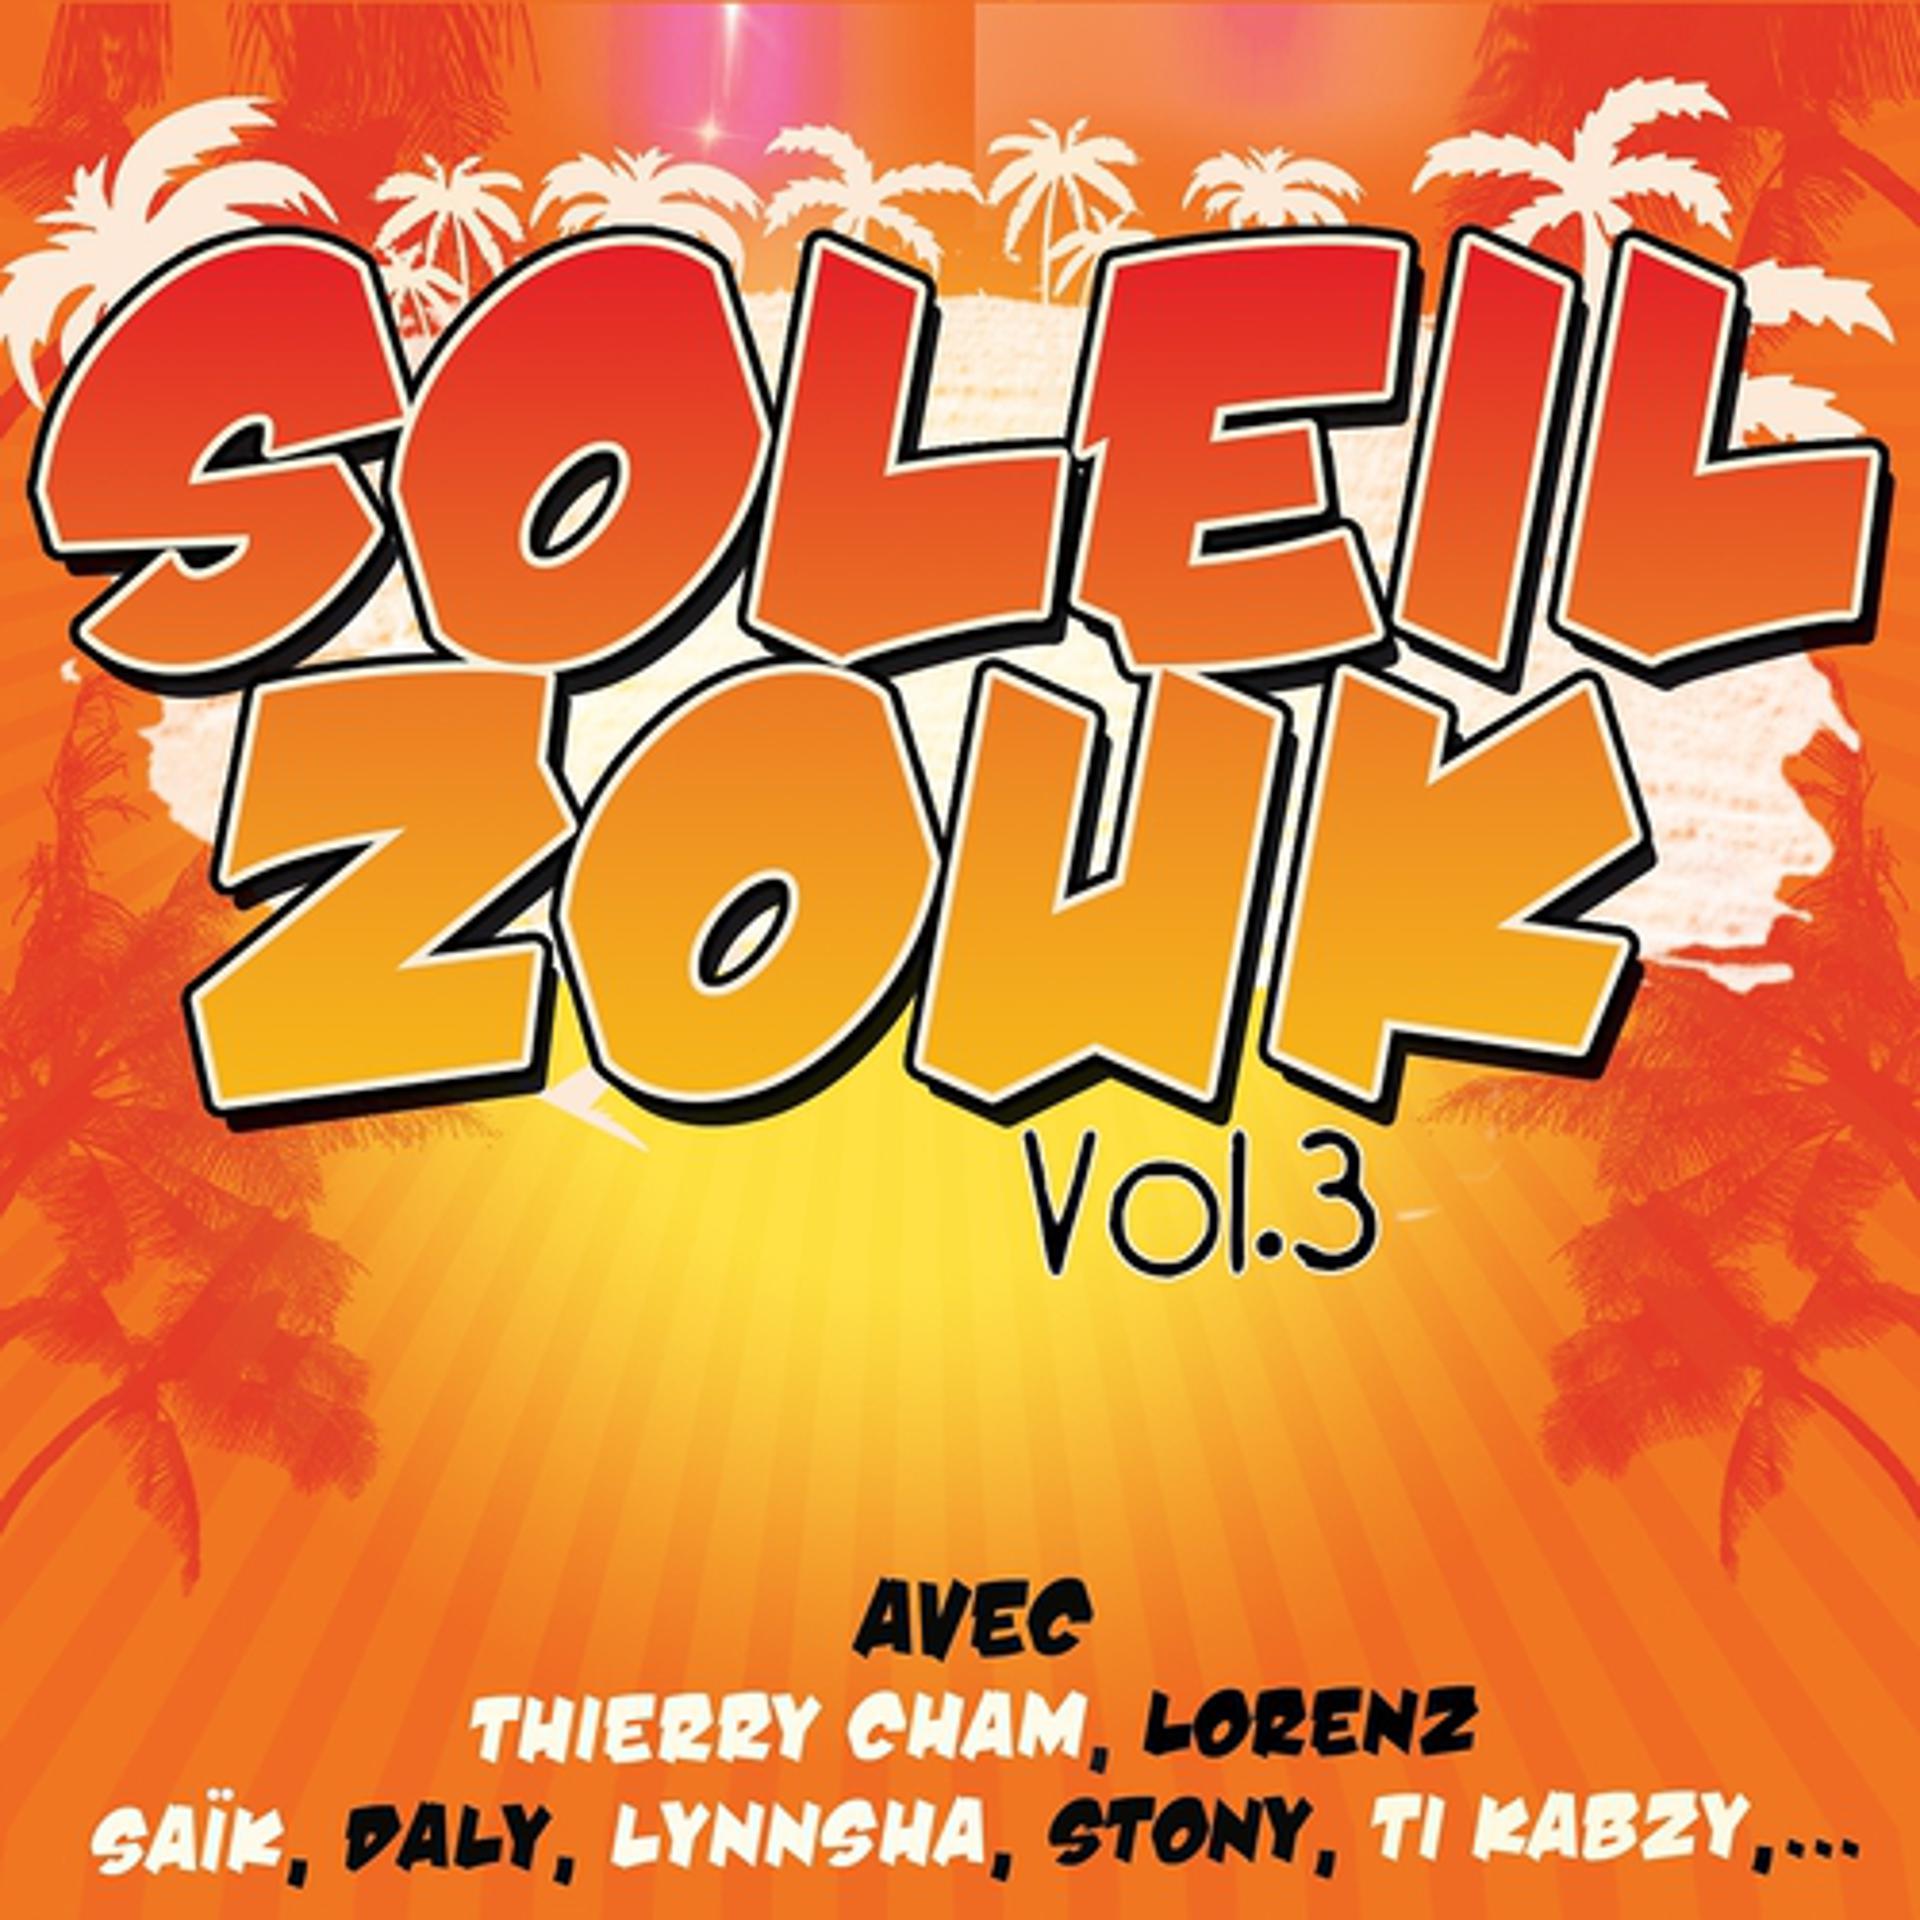 Постер альбома Soleil zouk, vol. 3